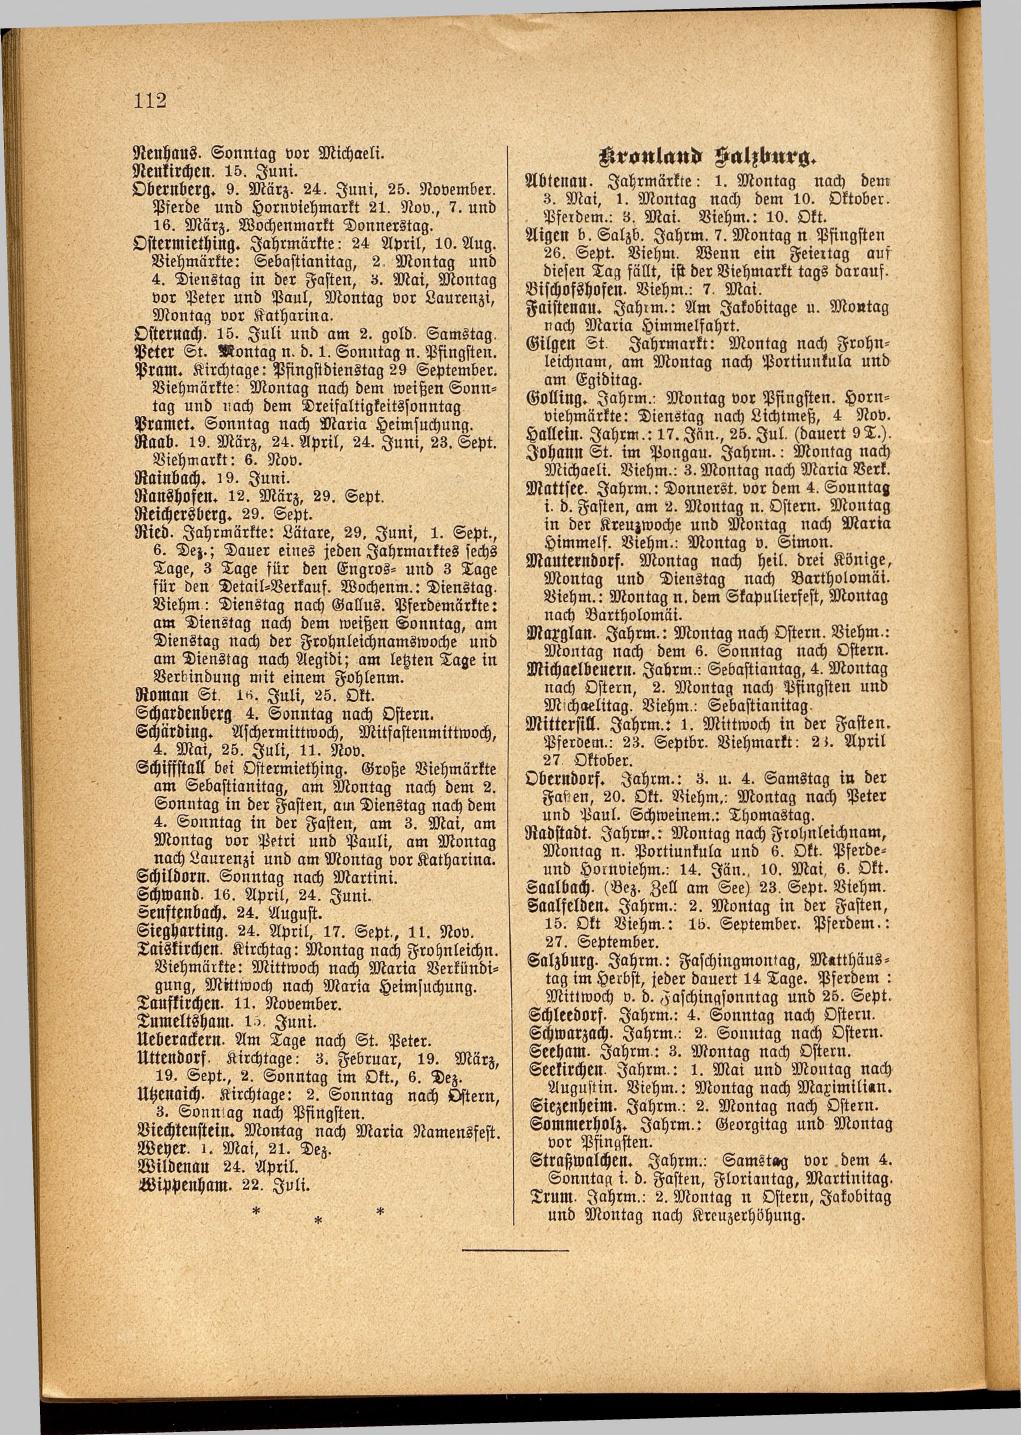 Illustrierter Braunauer-Kalender für das Jahr 1904 - Seite 116